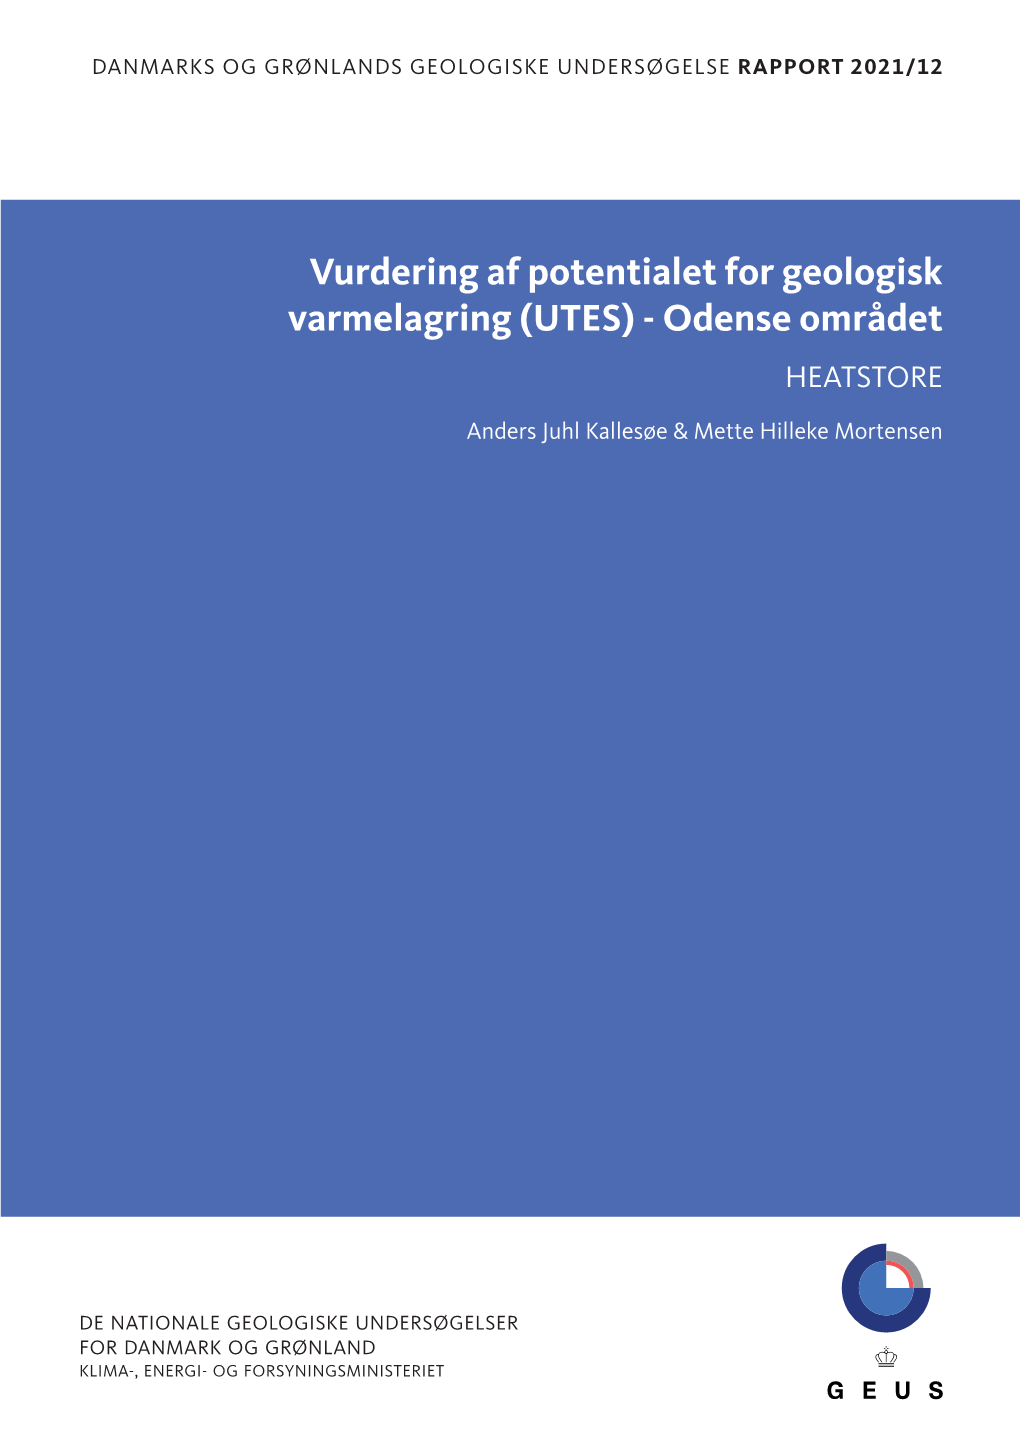 Vurdering Af Potentialet for Geologisk Varmelagring (UTES) - Odense Området HEATSTORE